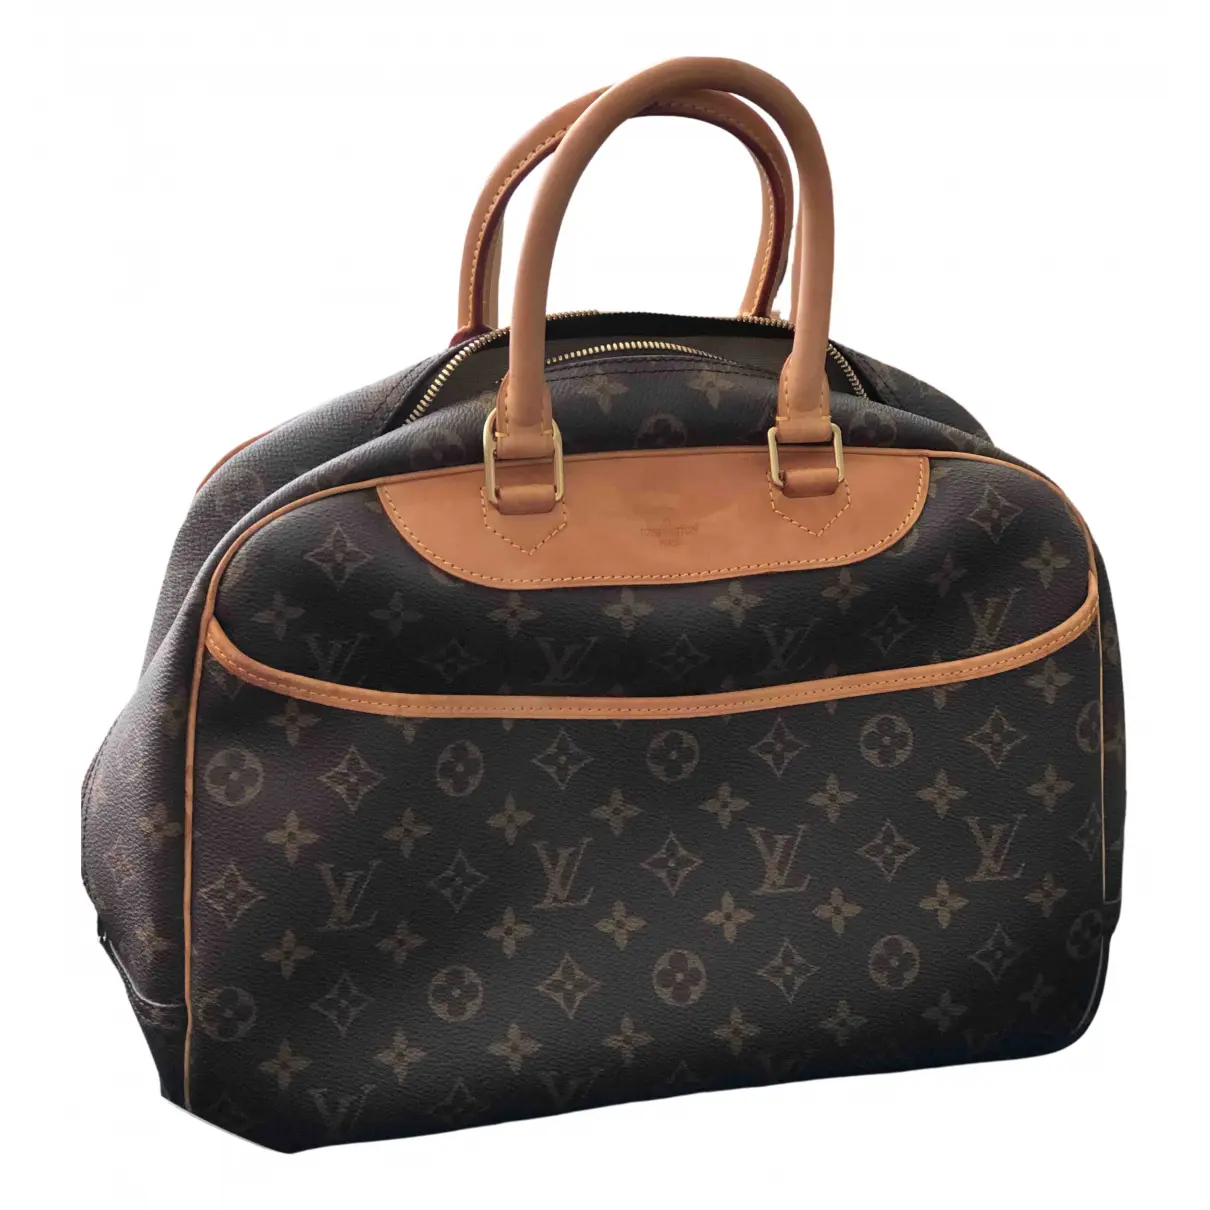 Deauville cloth handbag Louis Vuitton - Vintage